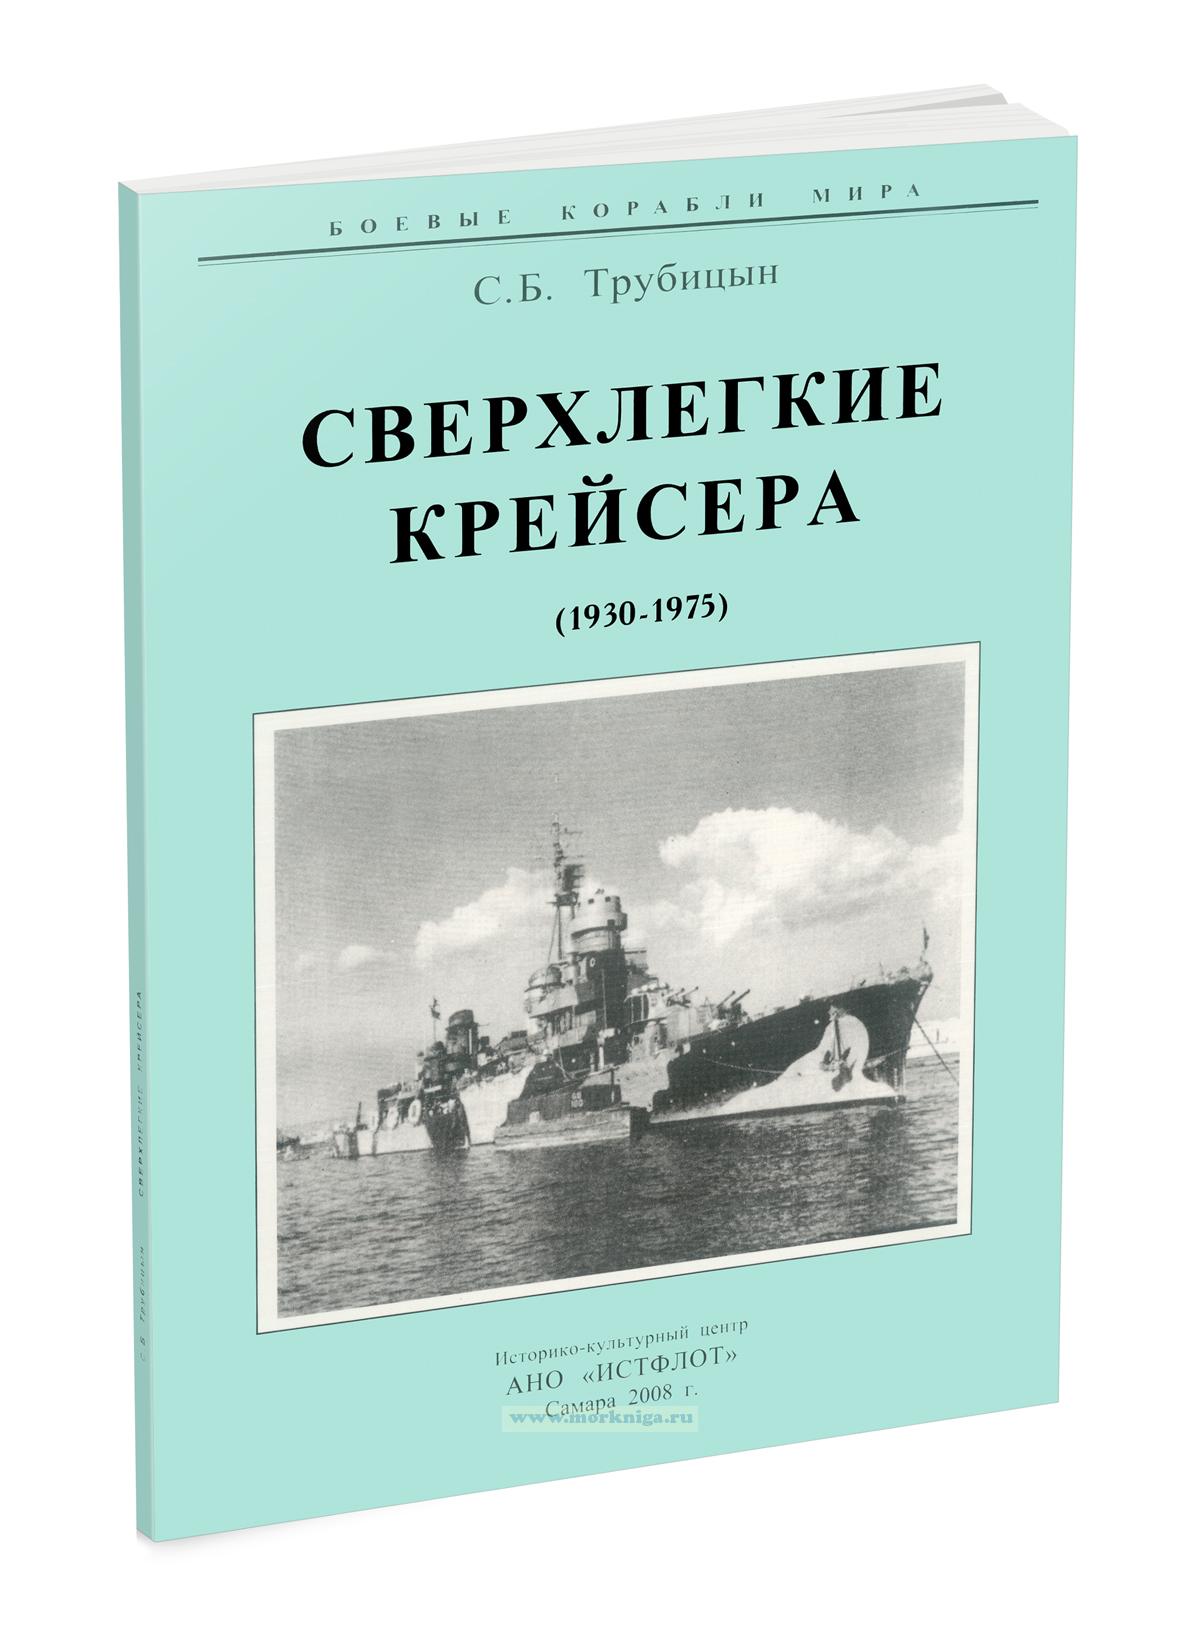 Сверхлегкие крейсера (1930-1975)